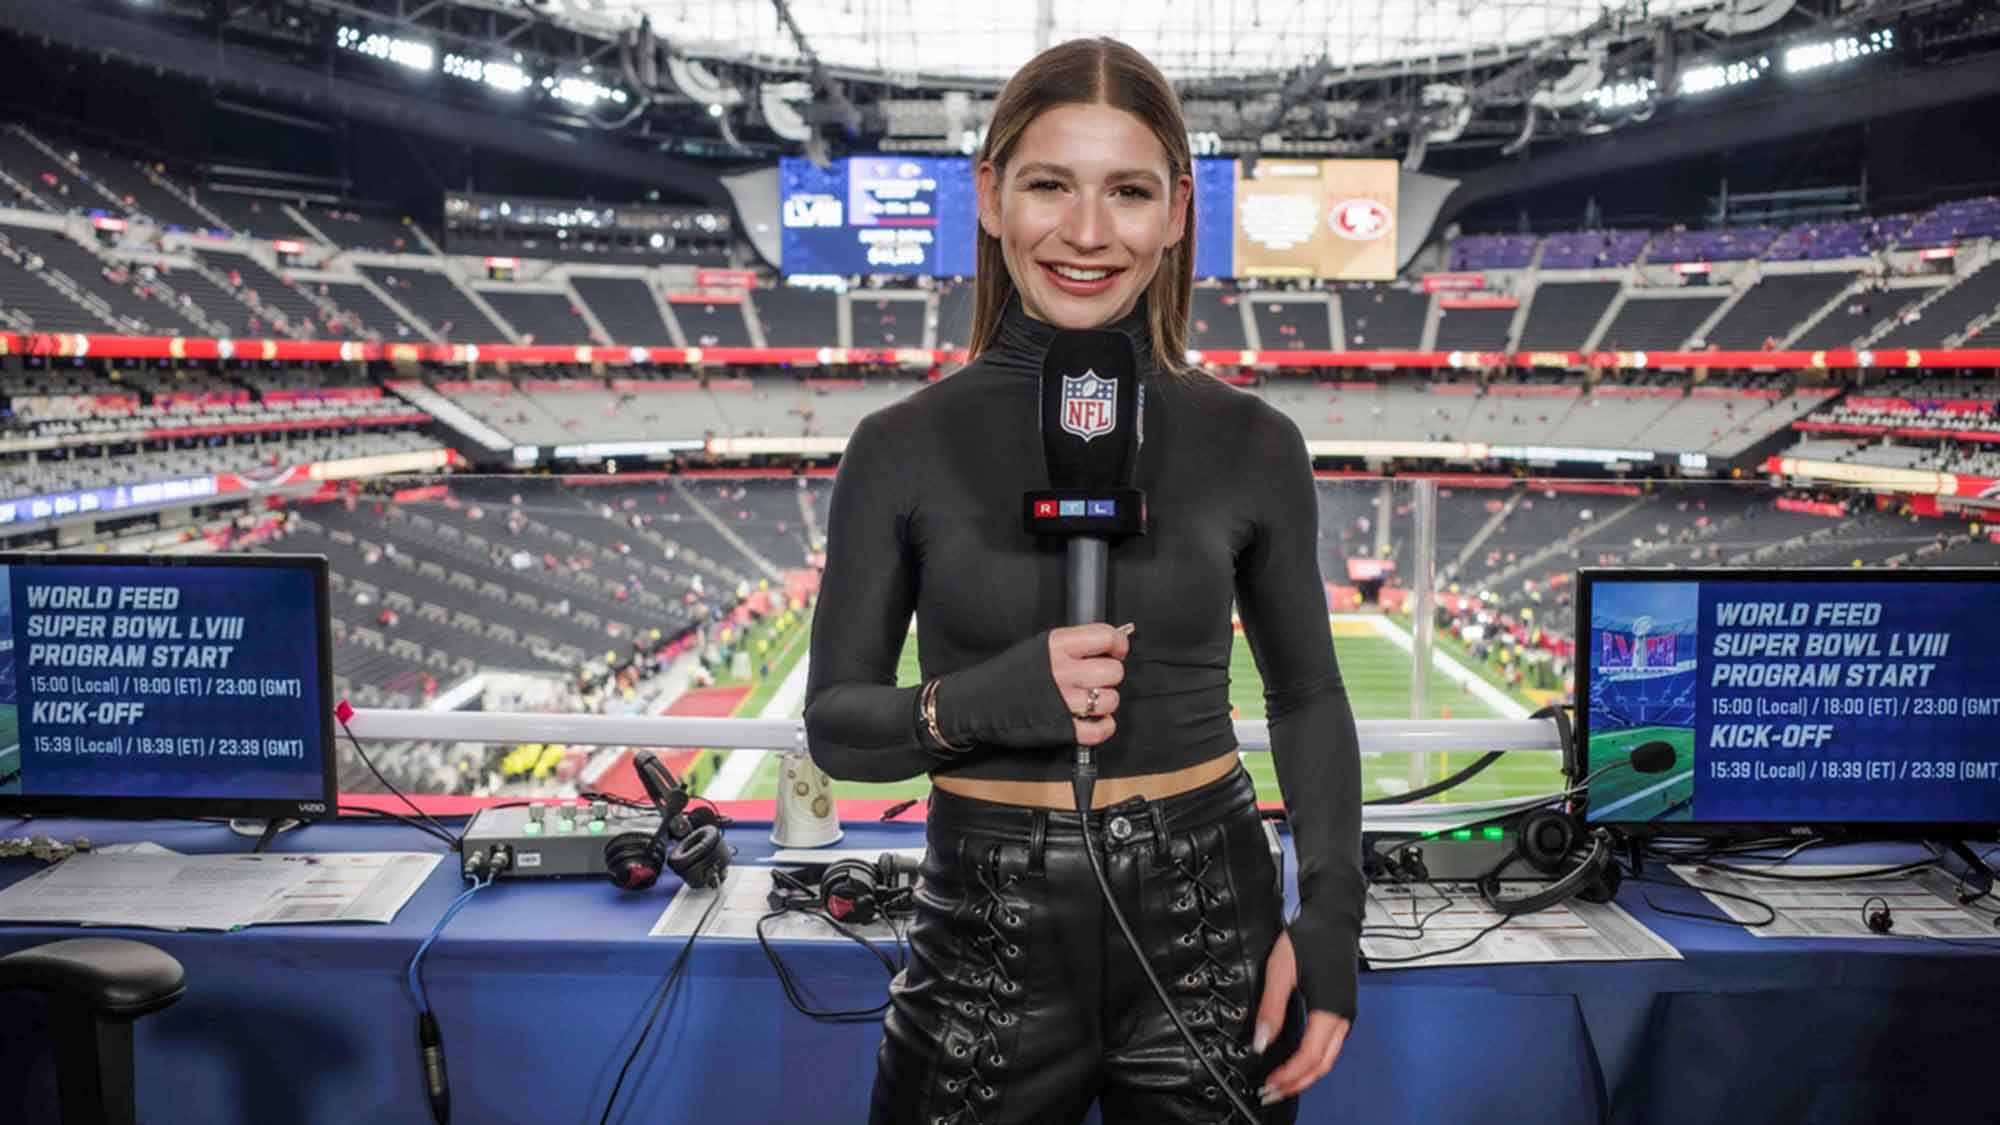 Quoten Touchdown im Spielerparadies! Bis zu 2,27 Millionen Fans verfolgen Super Bowl LVIII live bei RTL